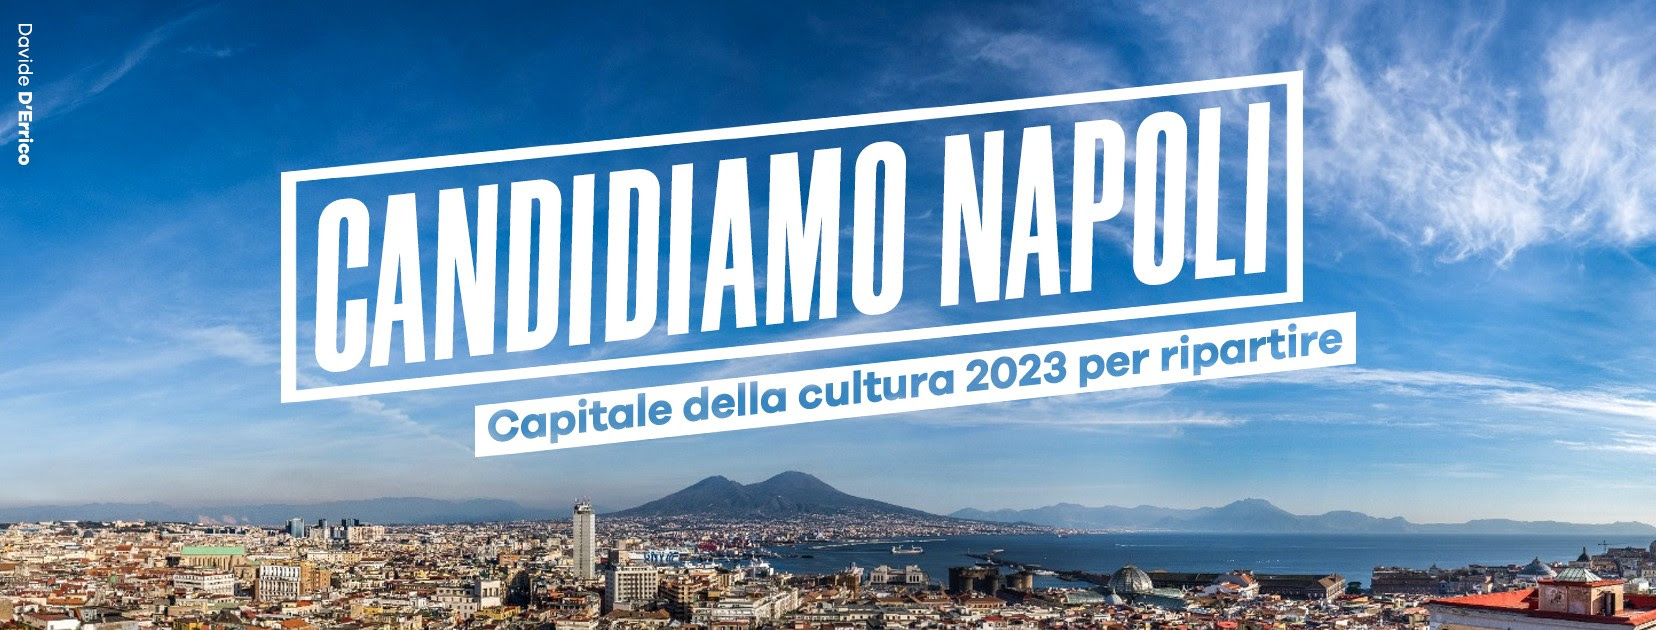 Candidare Napoli a capitale della cultura 2023: spot e petizione su change.org